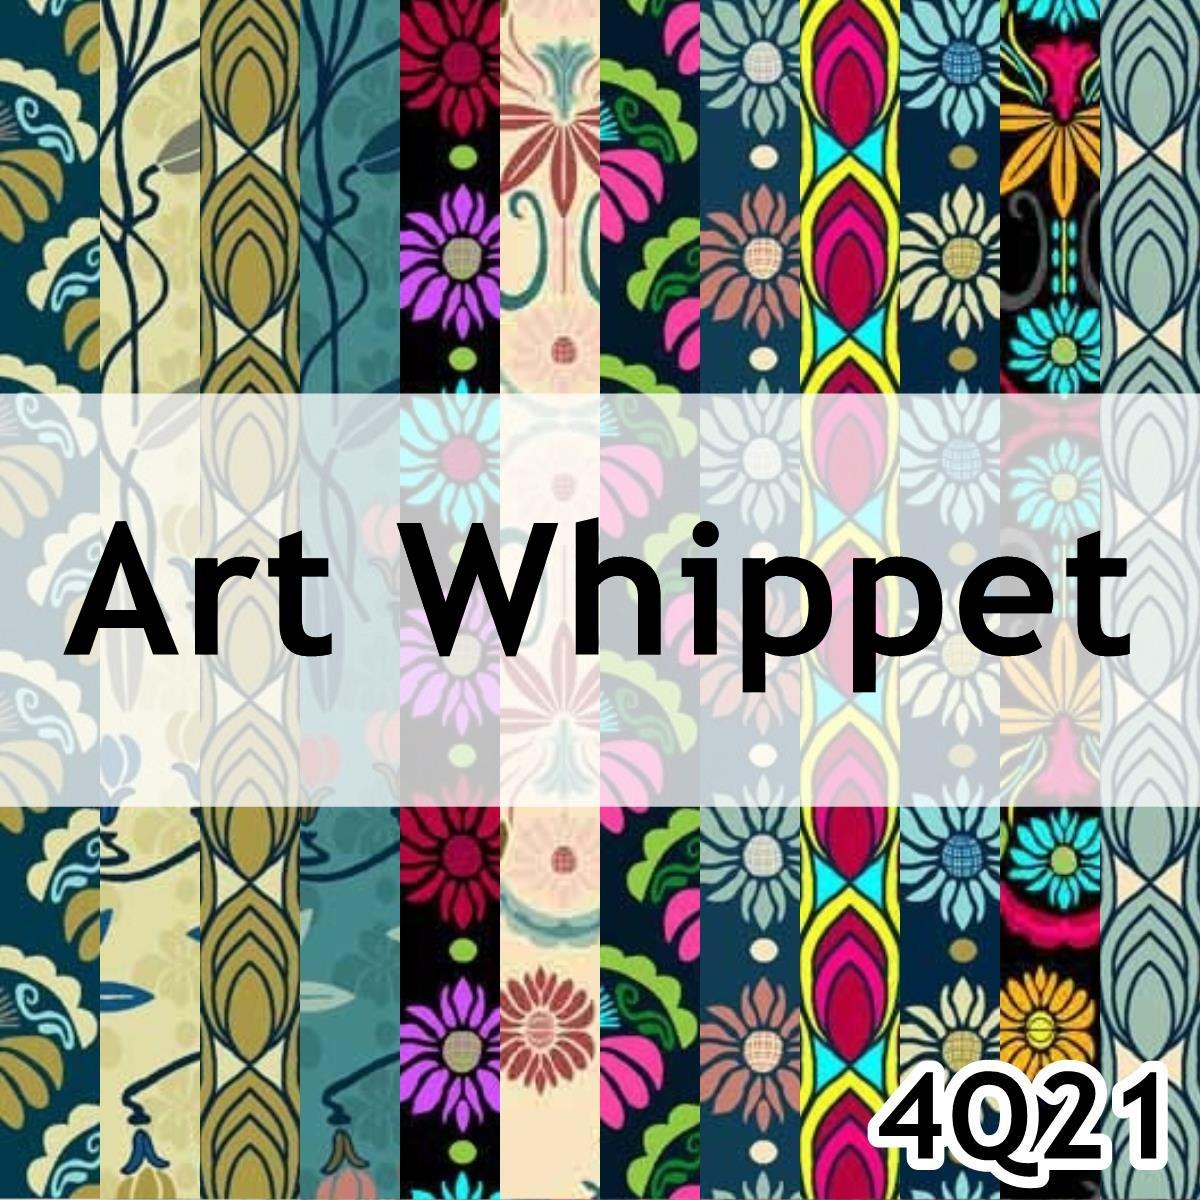 Art Whippet